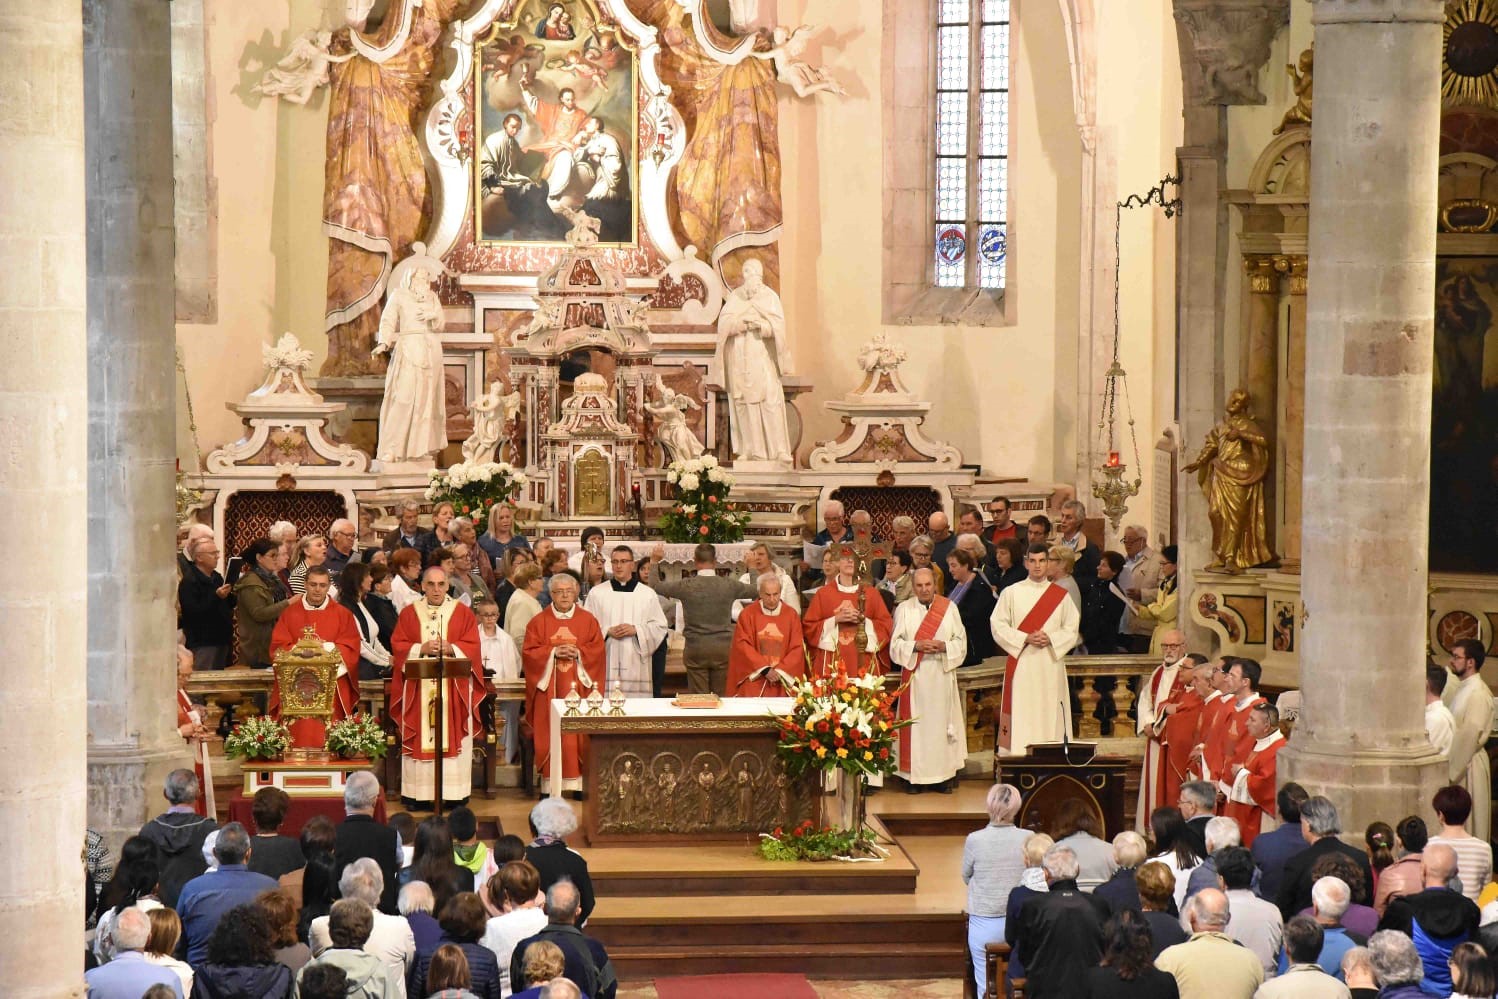 Quinientas personas en Sanzeno en la Fiesta de los Mártires, ejemplo de “dar la vida por los demás”